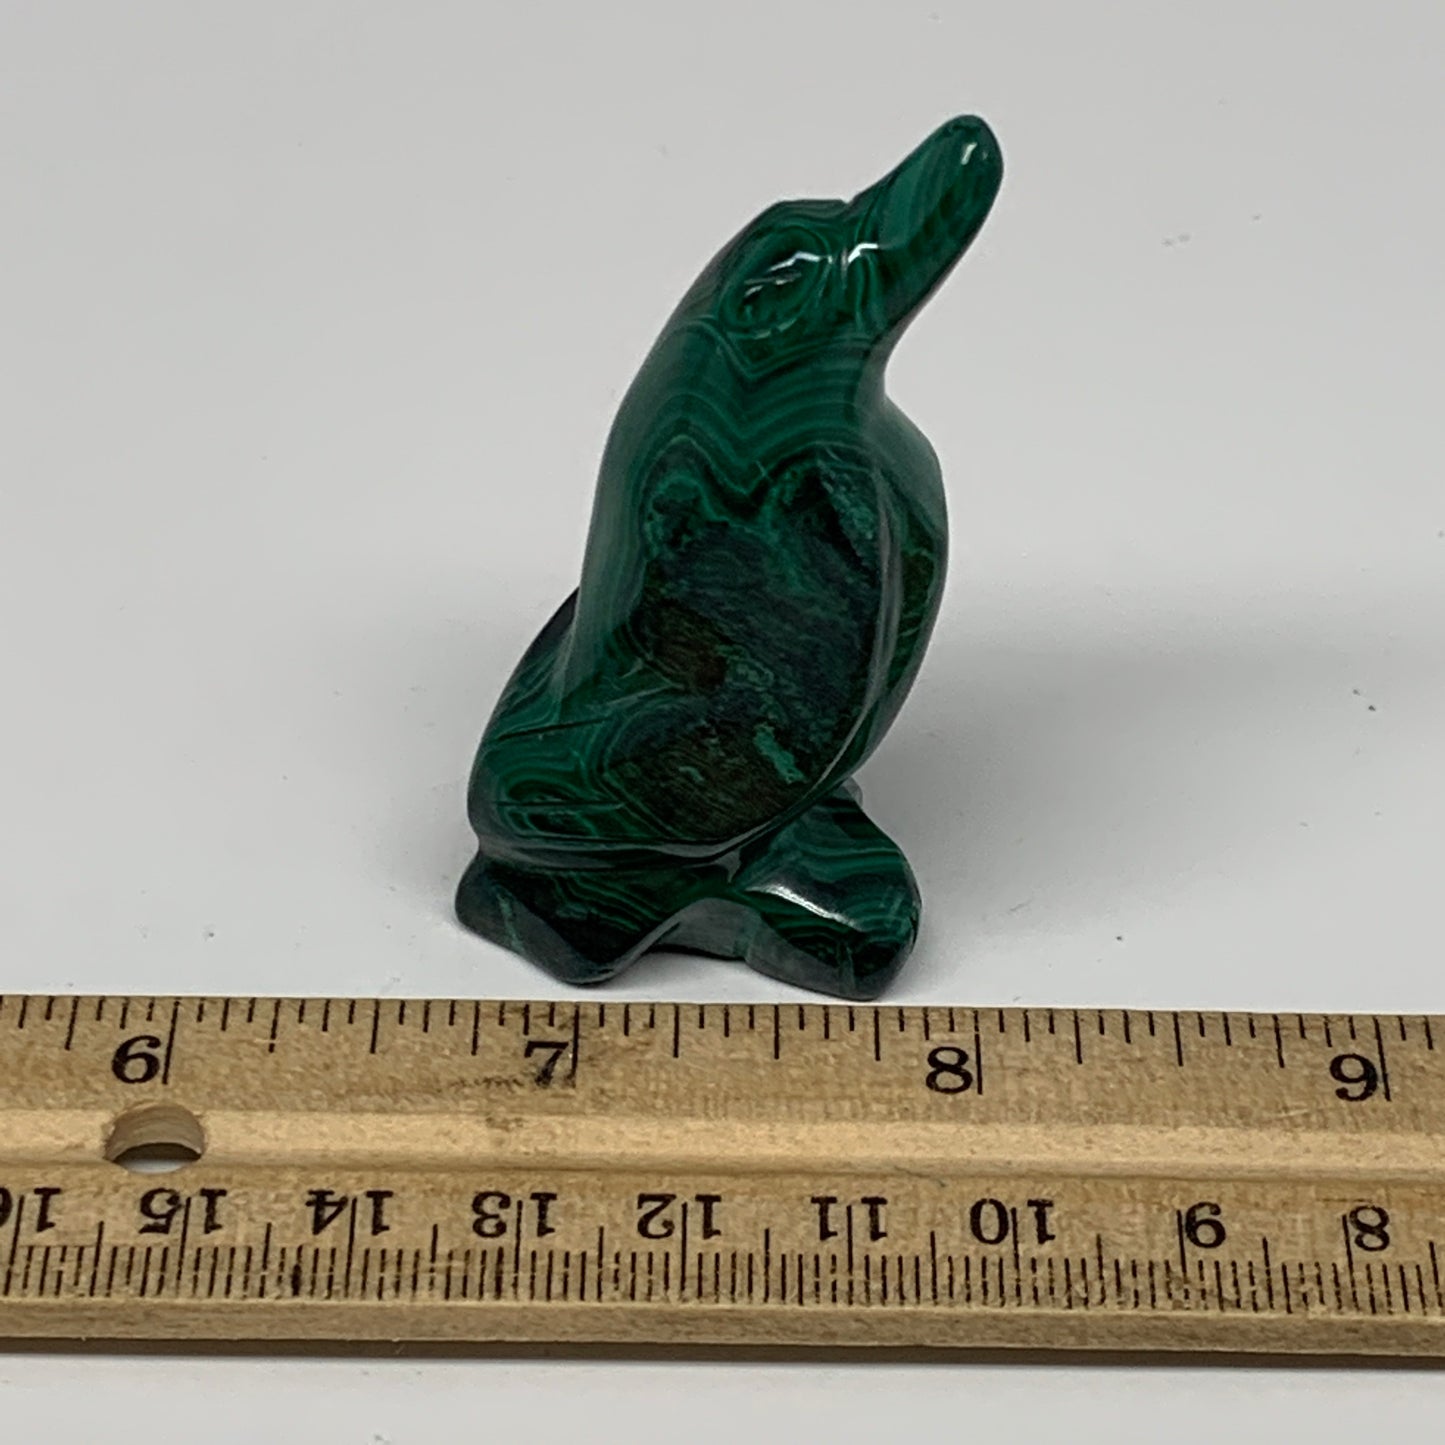 61.7g, 2.5"x1.2"x0.8" Natural Solid Malachite Penguin Figurine @Congo, B7394